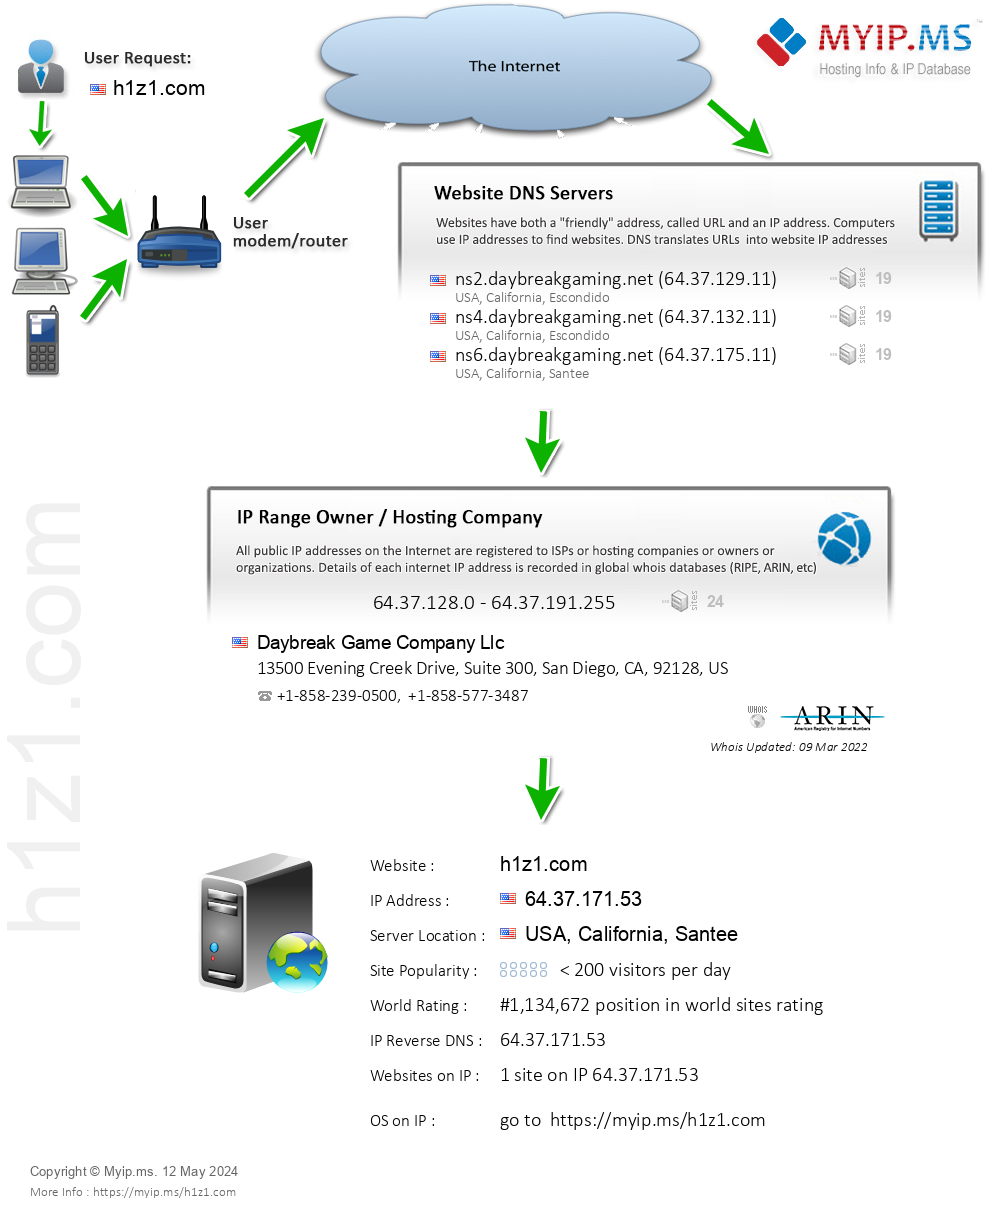 H1z1.com - Website Hosting Visual IP Diagram